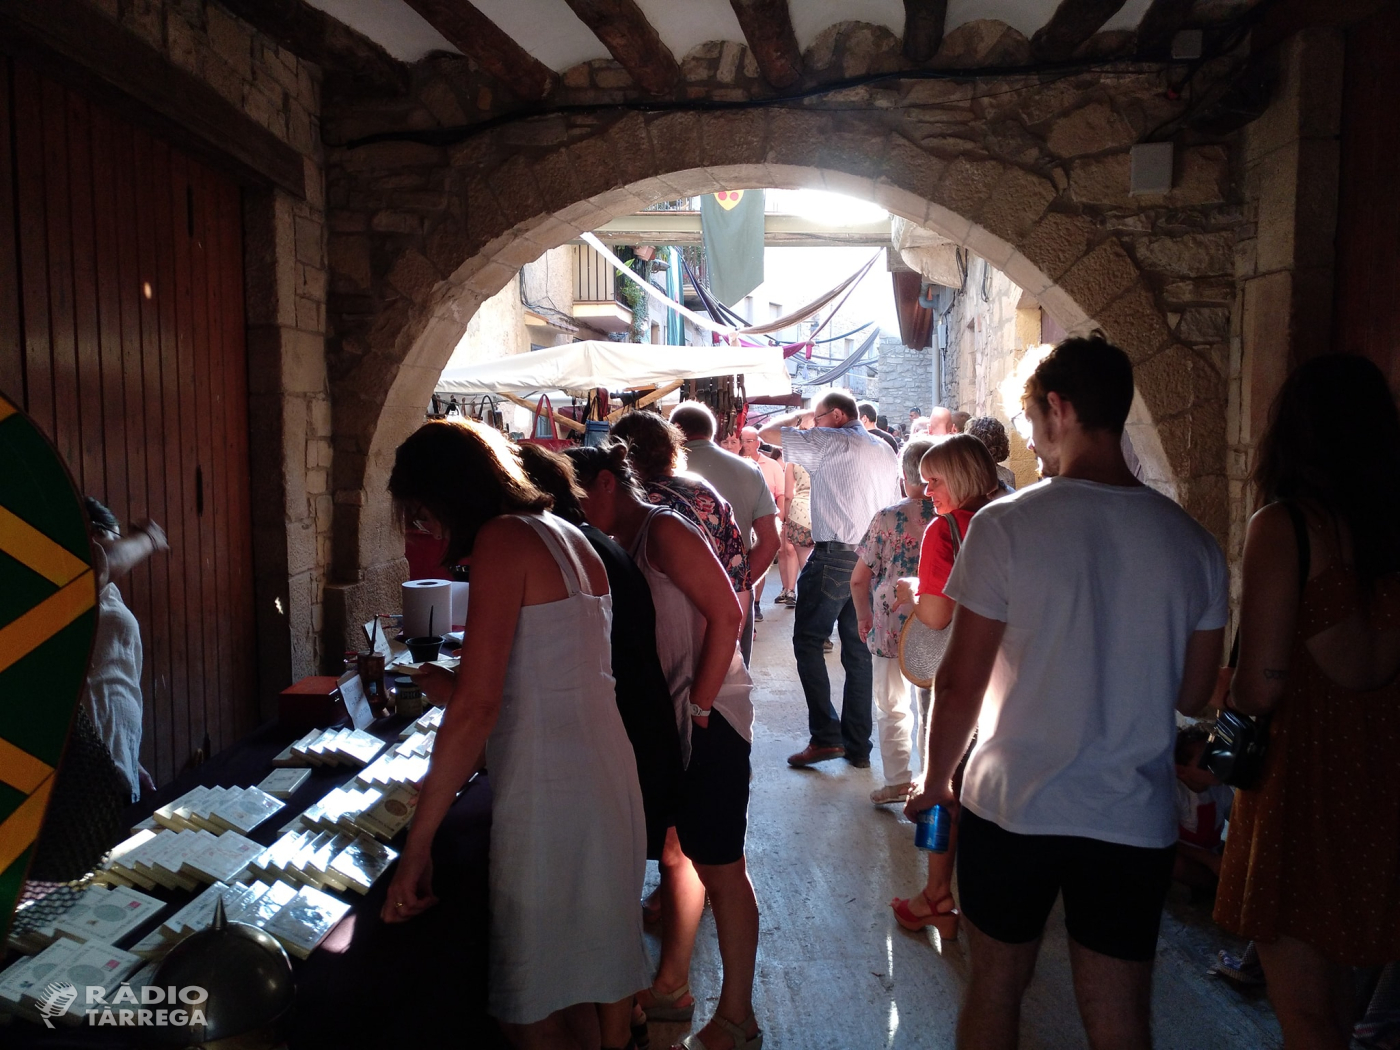 El mercat Medieval de Guimerà celebra el seu 25è aniversari amb més de 20.000 visitants